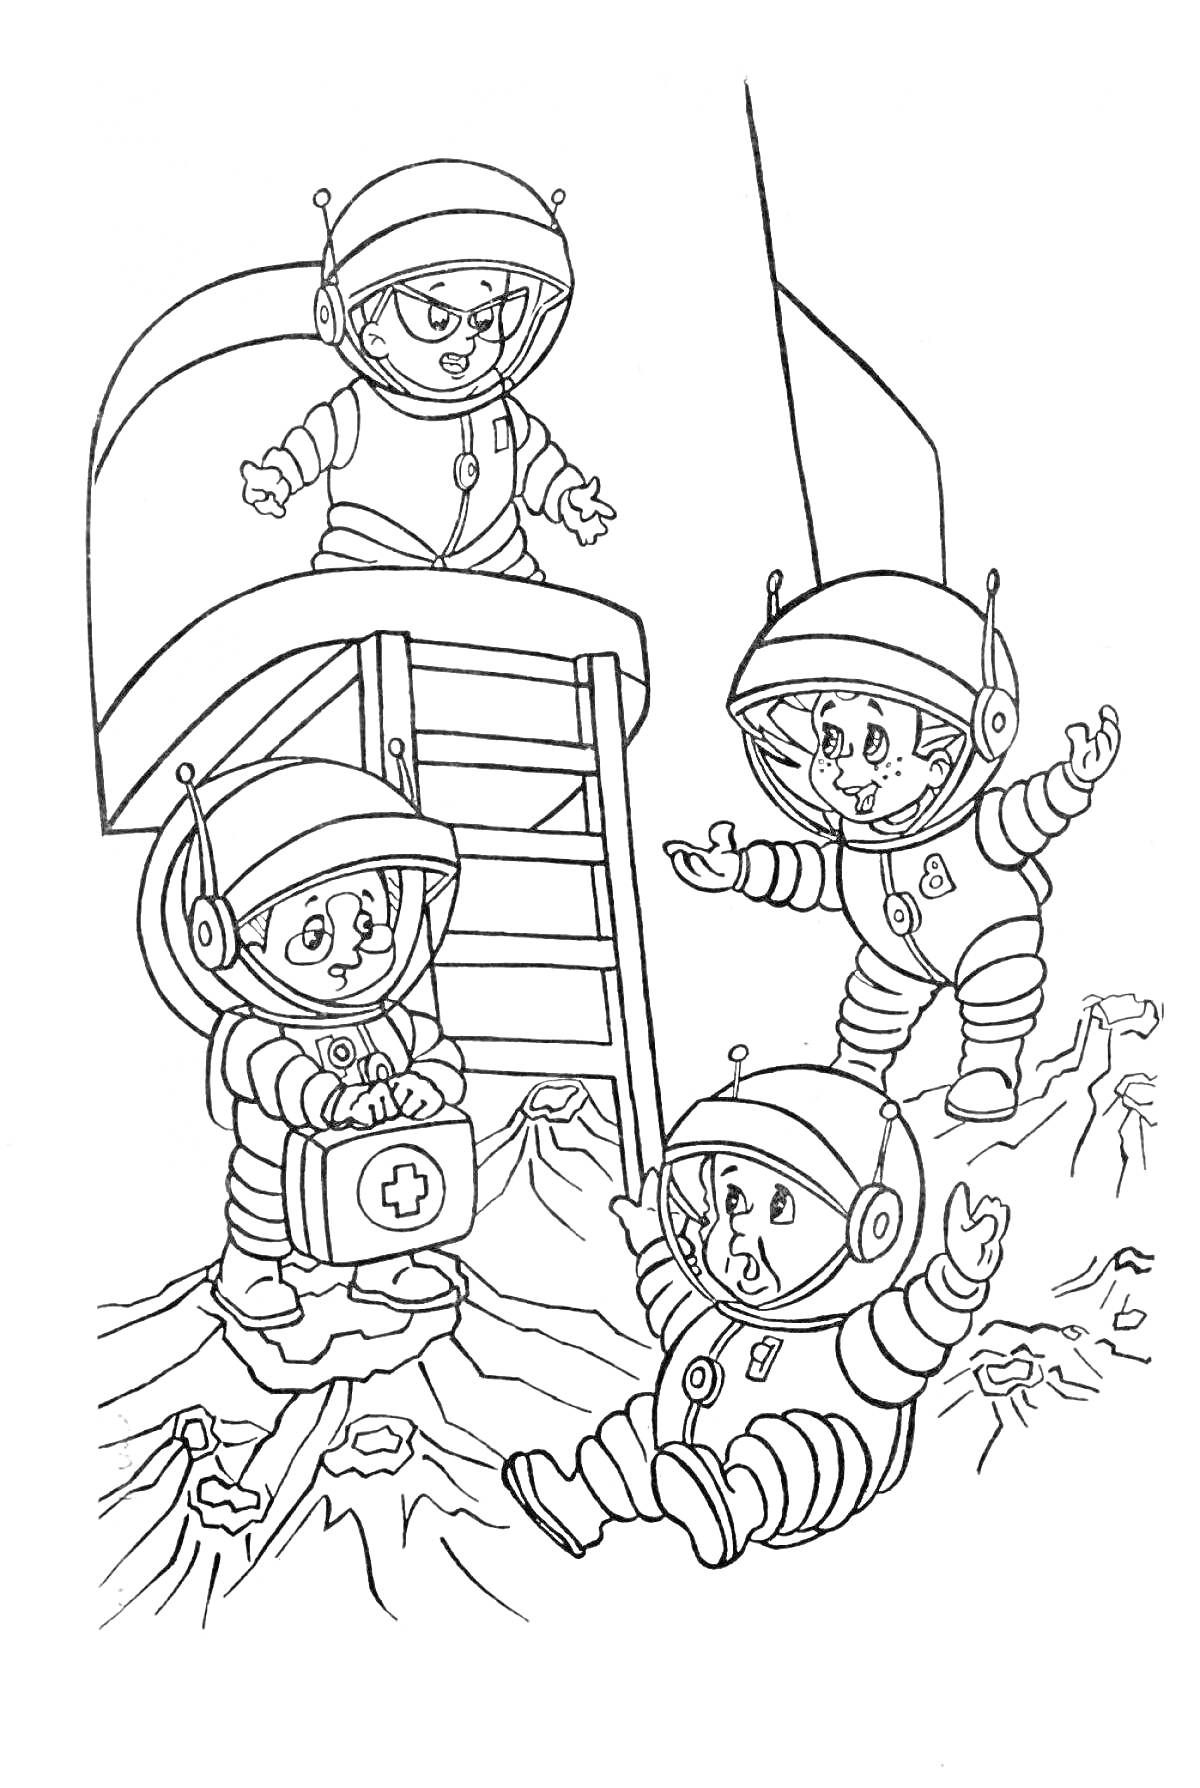 Астронавты у лунного модуля. Три космонавта в скафандрах с медицинской сумкой, стоящие и сидящие на поверхности, и четвертый космонавт, спускающийся по лестнице из модуля.